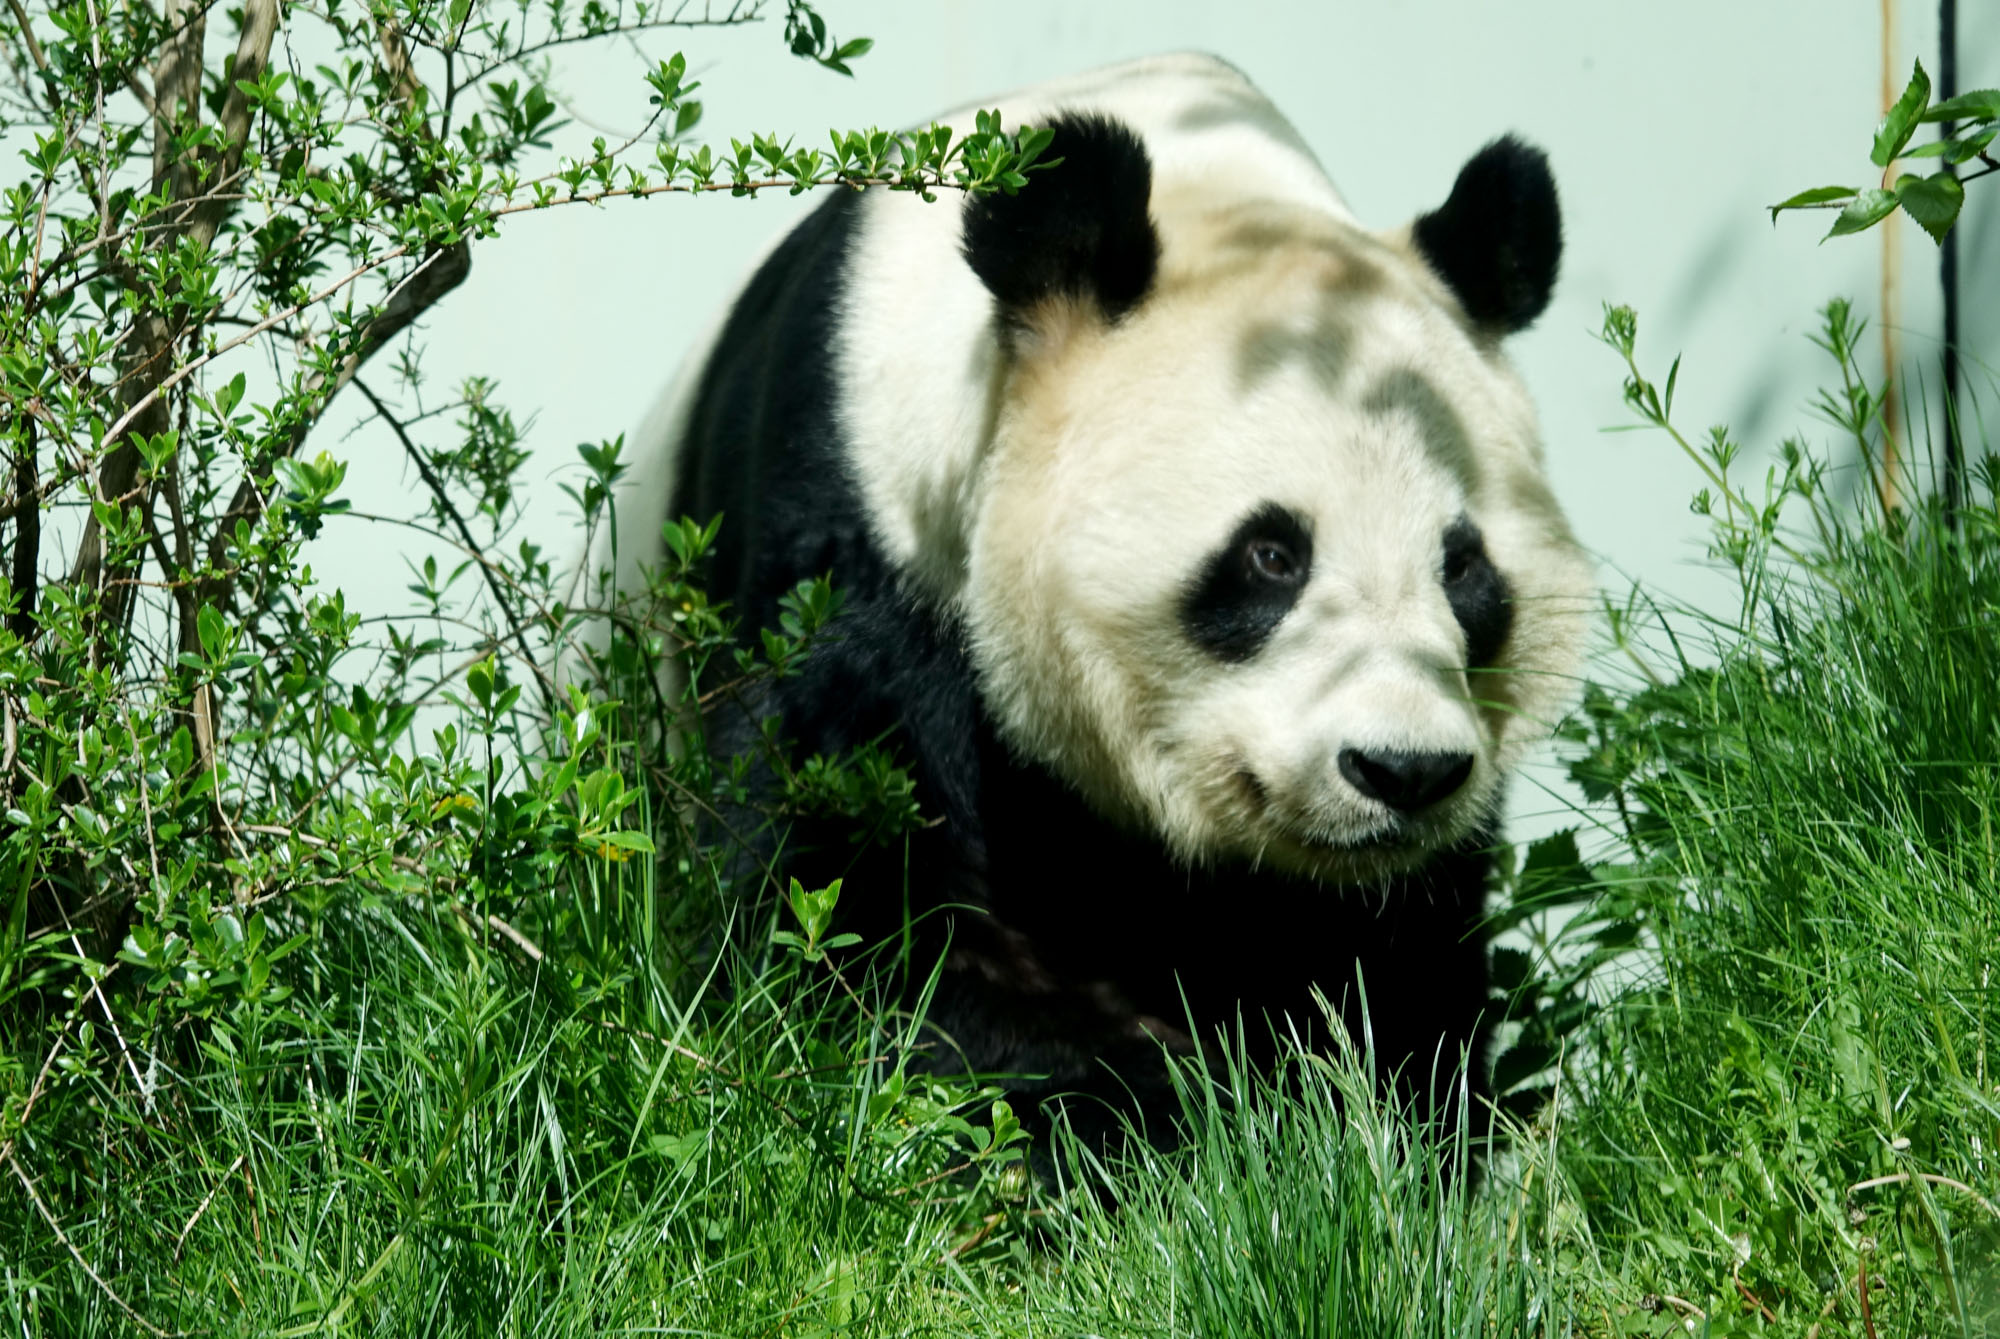 Panda in foliage